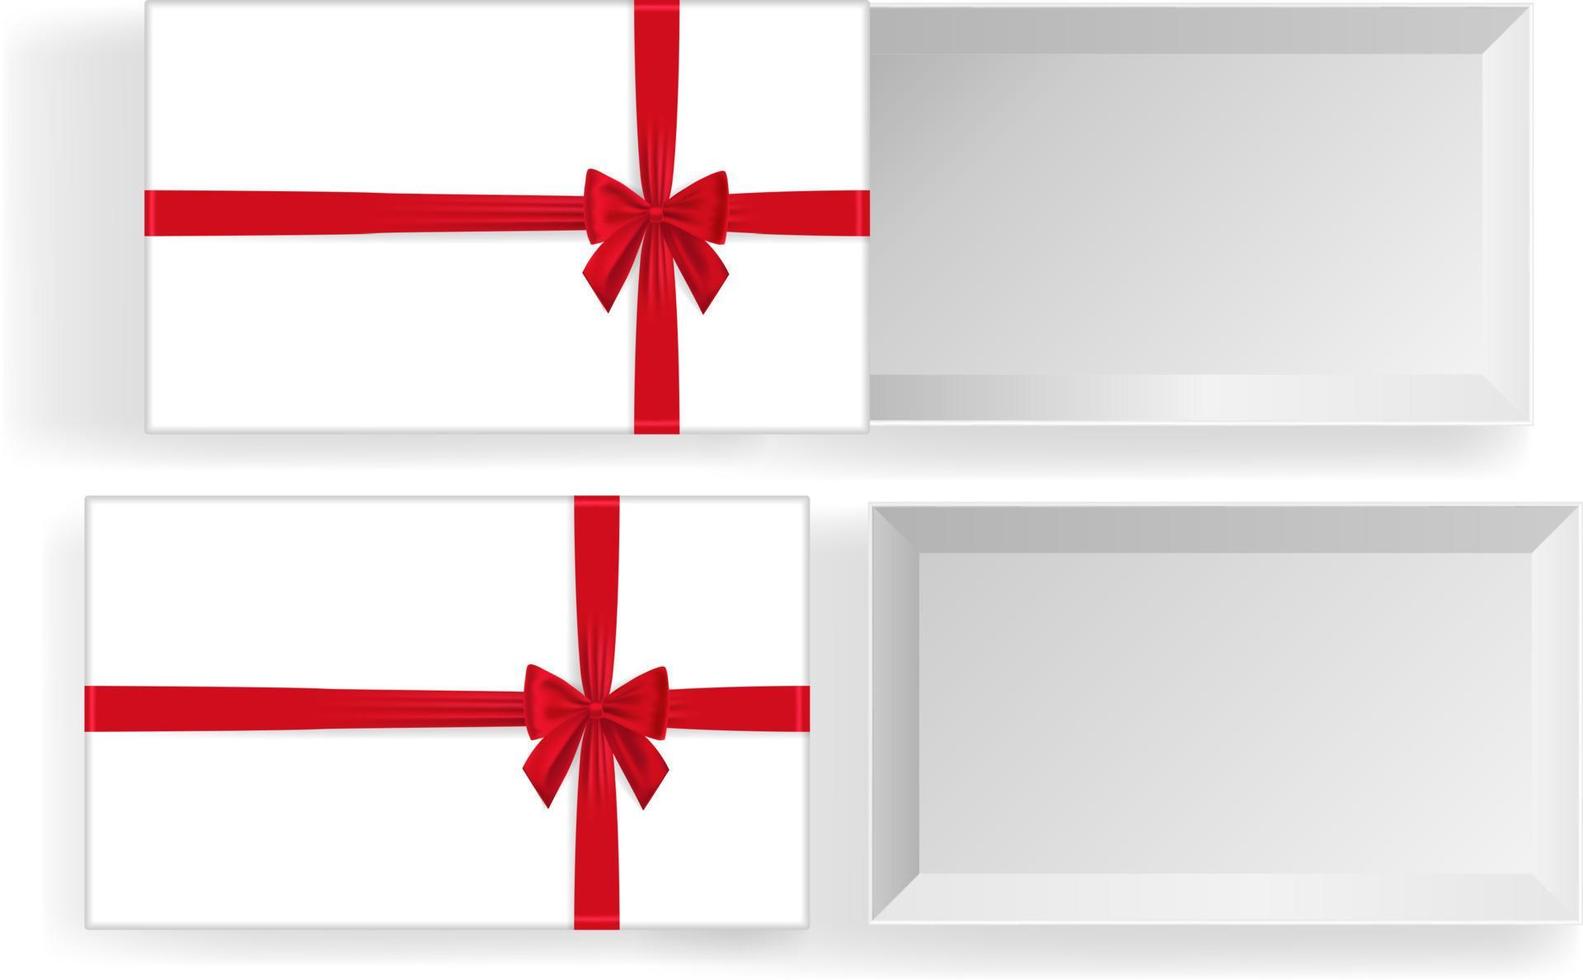 tömma öppen gåva låda med röd Färg rosett Knut, band isolerat på vit bakgrund. Lycklig födelsedag, jul, ny år, bröllop eller valentine dag paket begrepp. 3d vektor illustration, topp se.